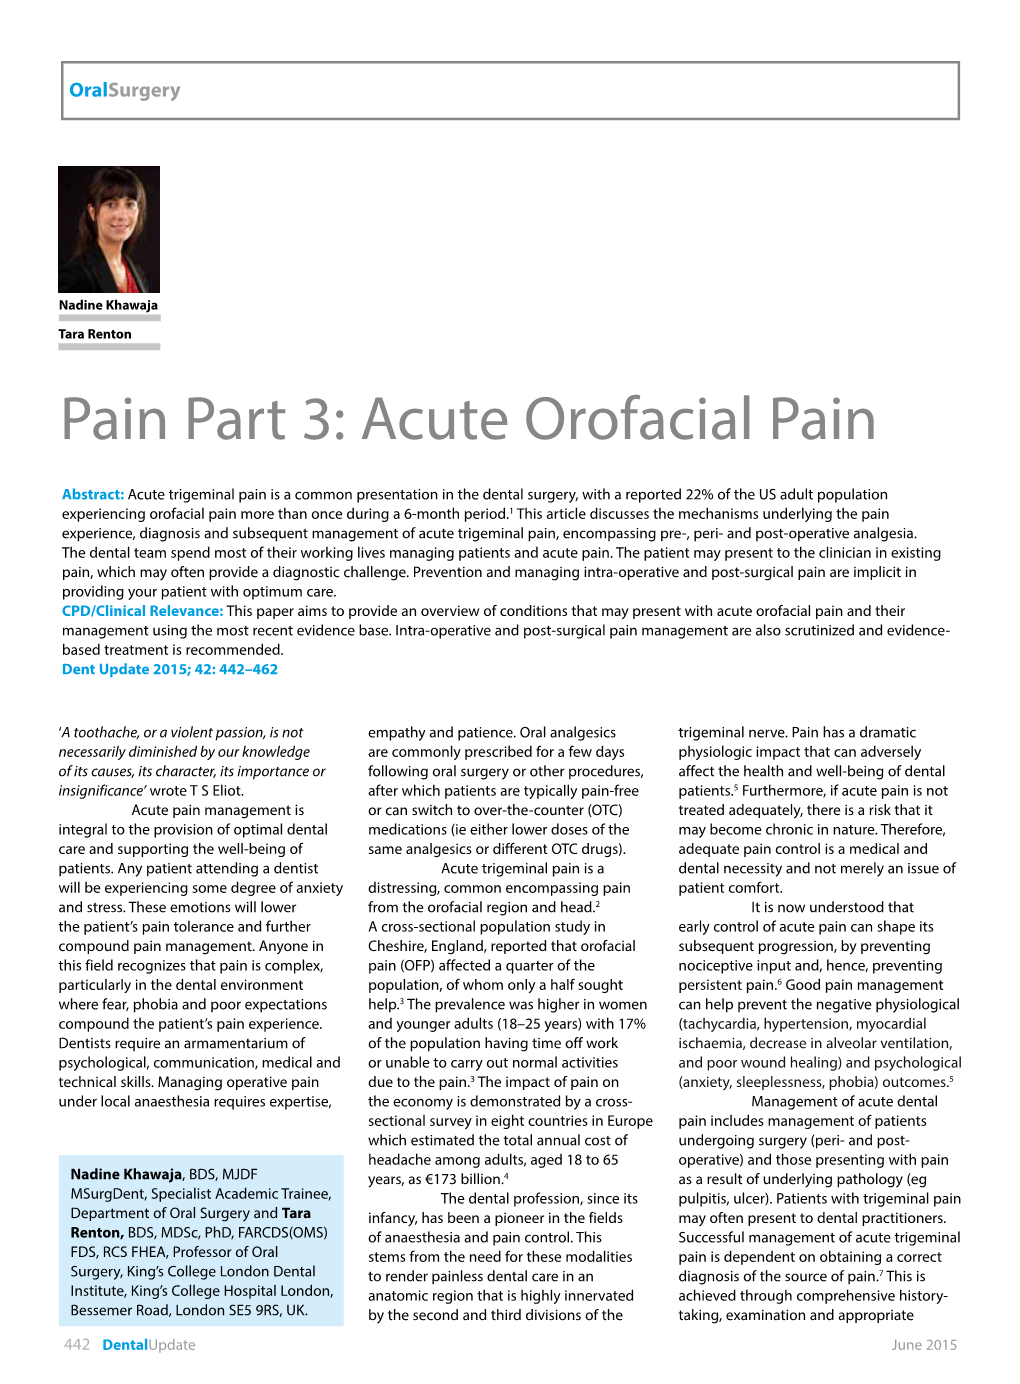 Acute Orofacial Pain